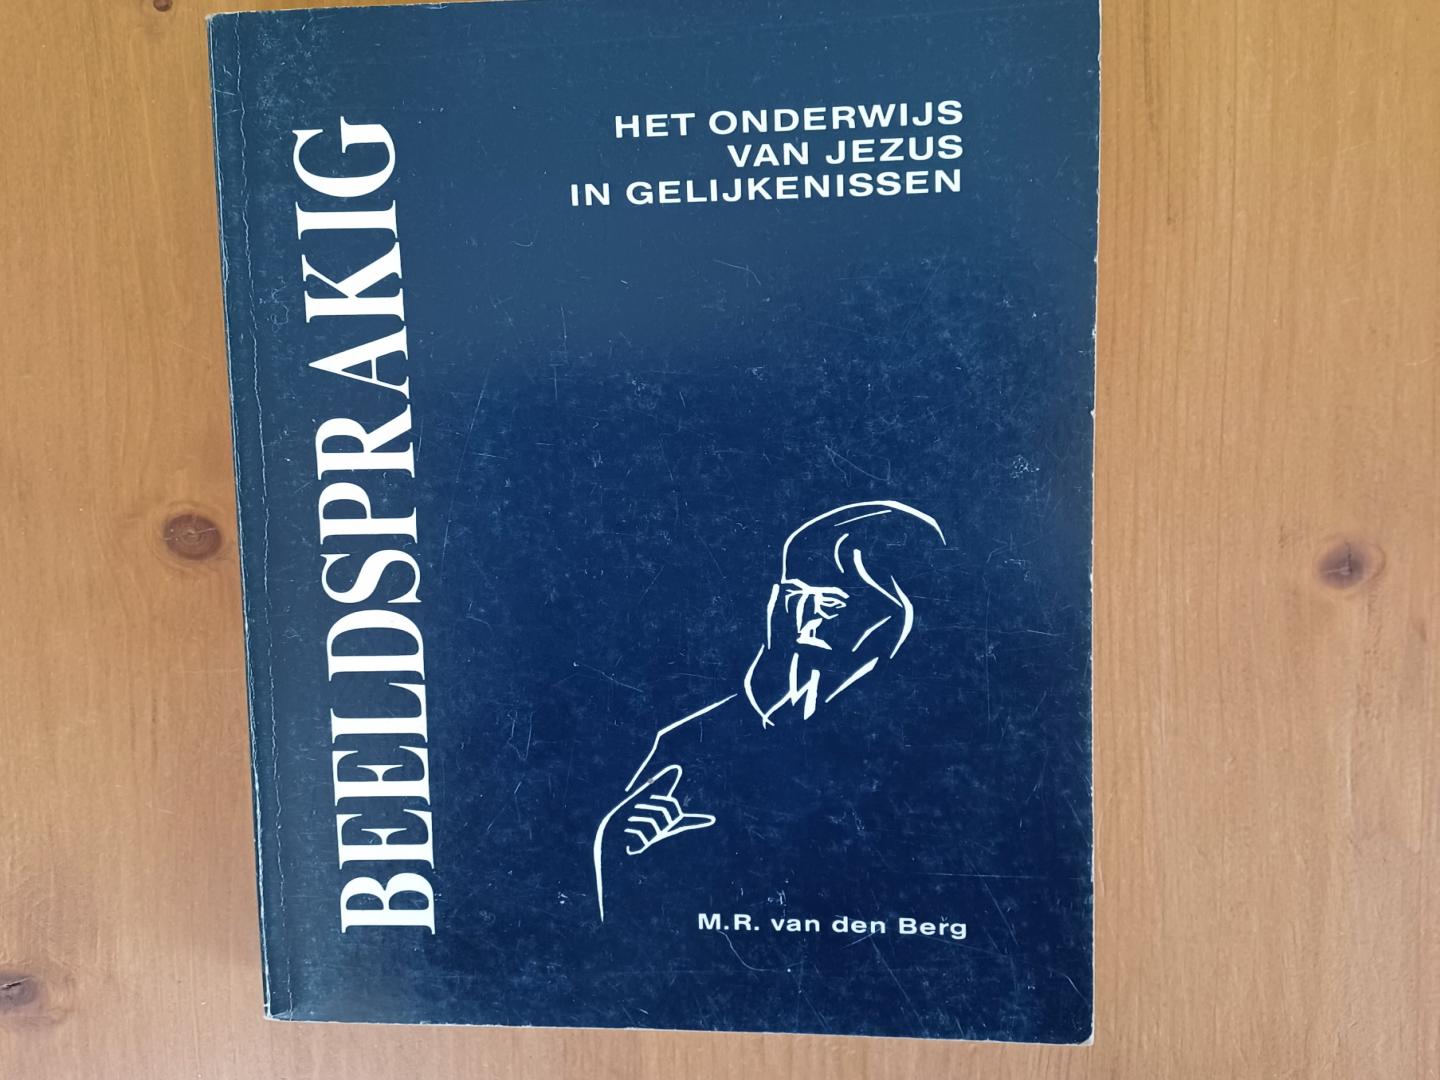 Berg, M.R. van den - Beeldsprakig - Het onderwijs van Jezus in gelijkenissen